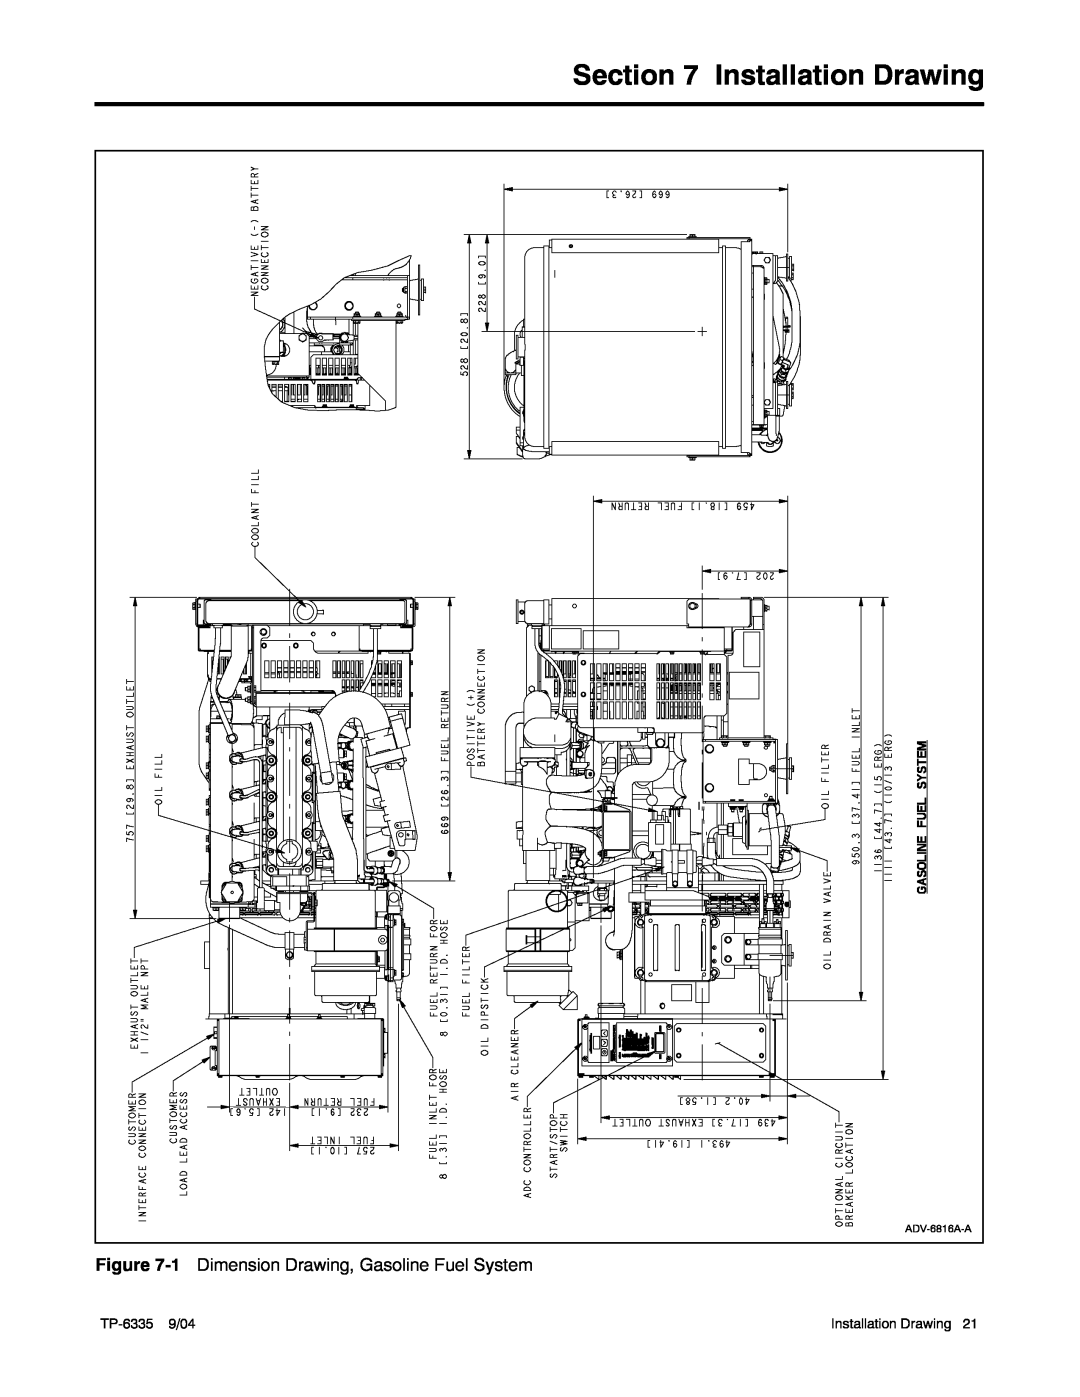 Kohler 13ERG, 15ERG, 10ERG manual Installation Drawing, 1 Dimension Drawing, Gasoline Fuel System 